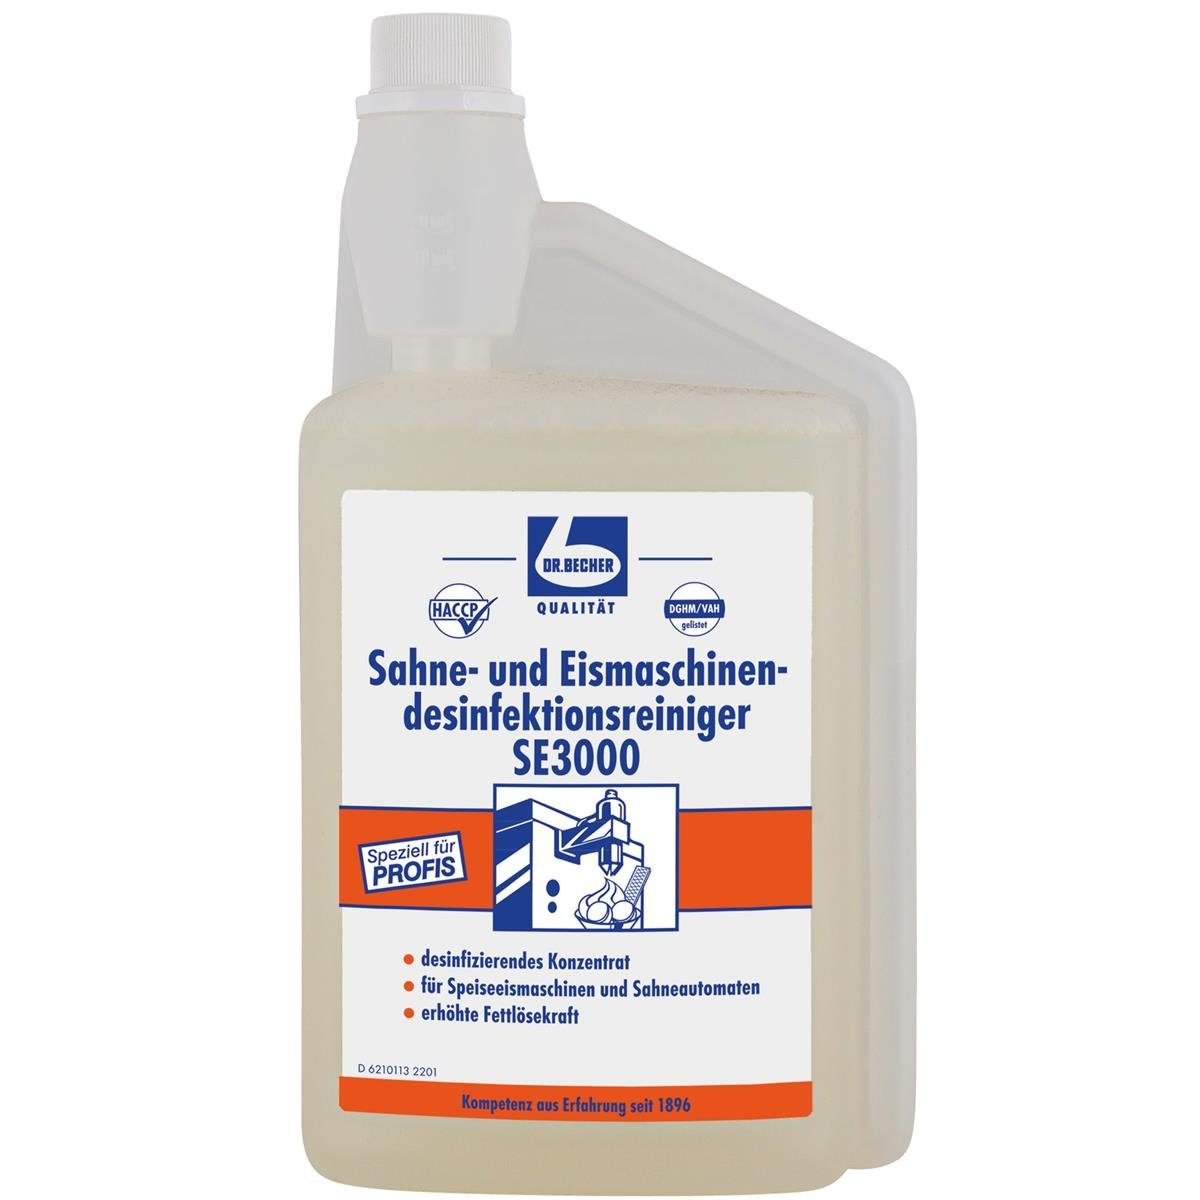 Dr. Becher Sahne und Eismaschinen Desinfektionsreiniger von Dr. Becher SE3000 / 1 Spezialwaschmittel